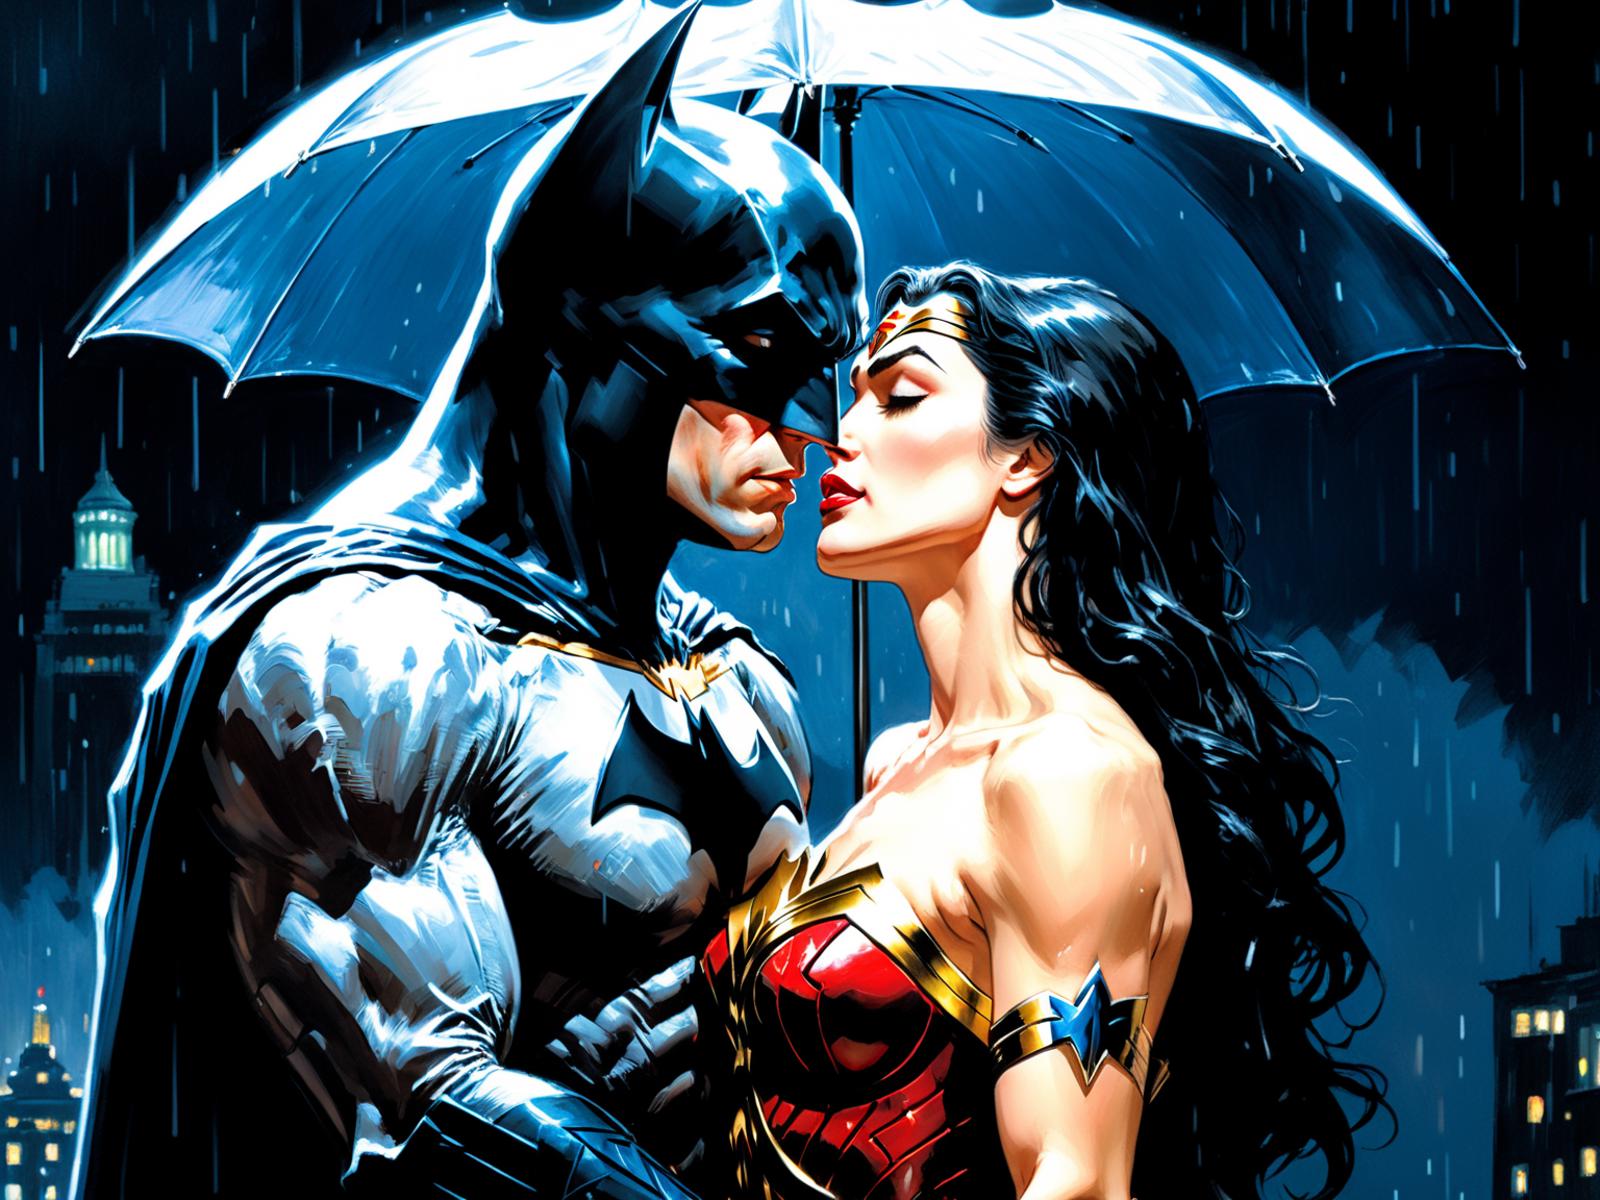 Batman and Wonder Woman Standing Under an Umbrella